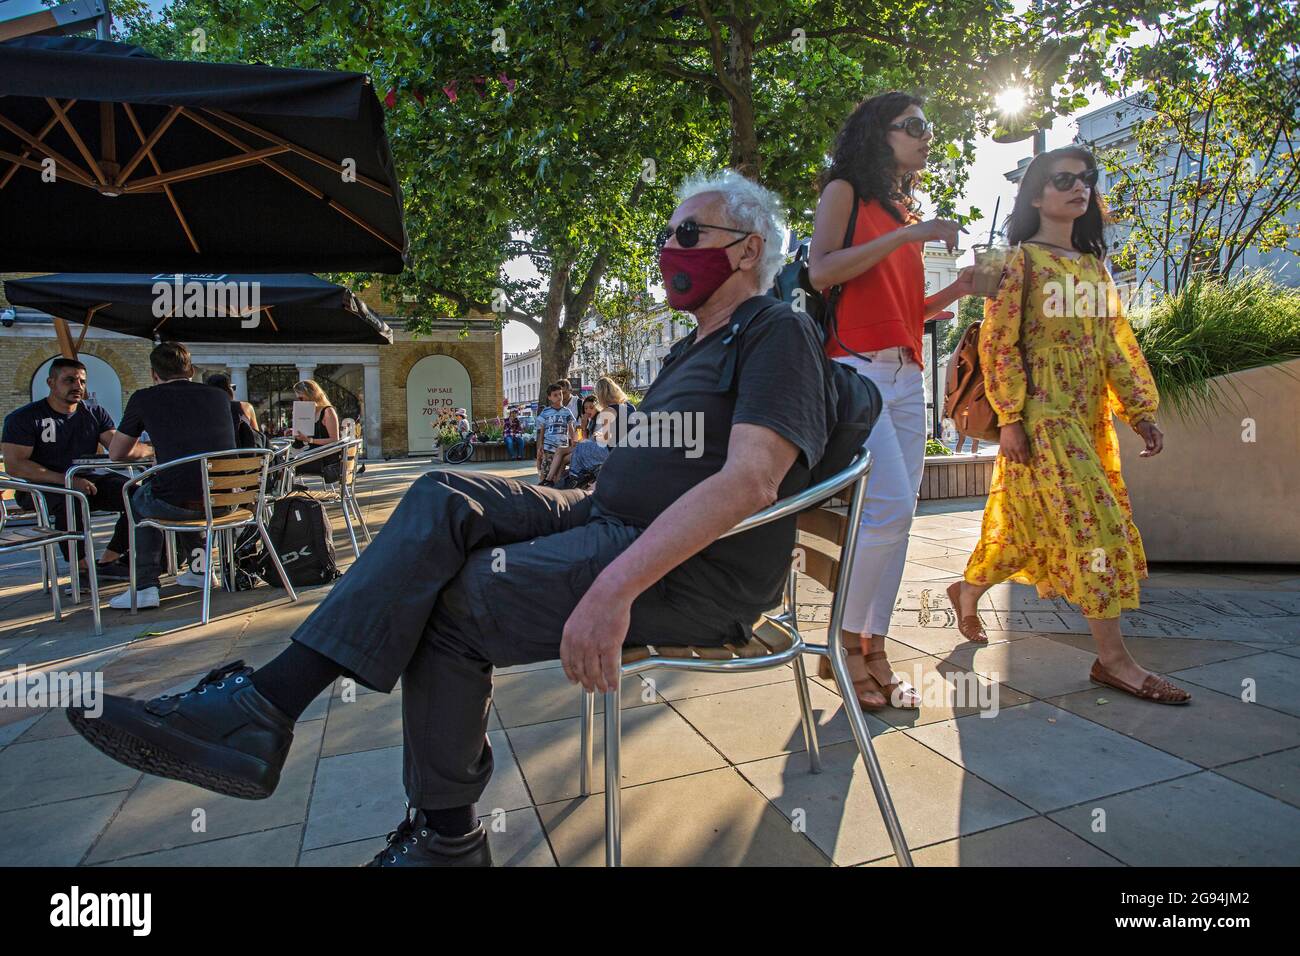 Hombre que lleva una máscara distanciando de la gente sentada cerca de King's Rd, Londres, Reino Unido Foto de stock